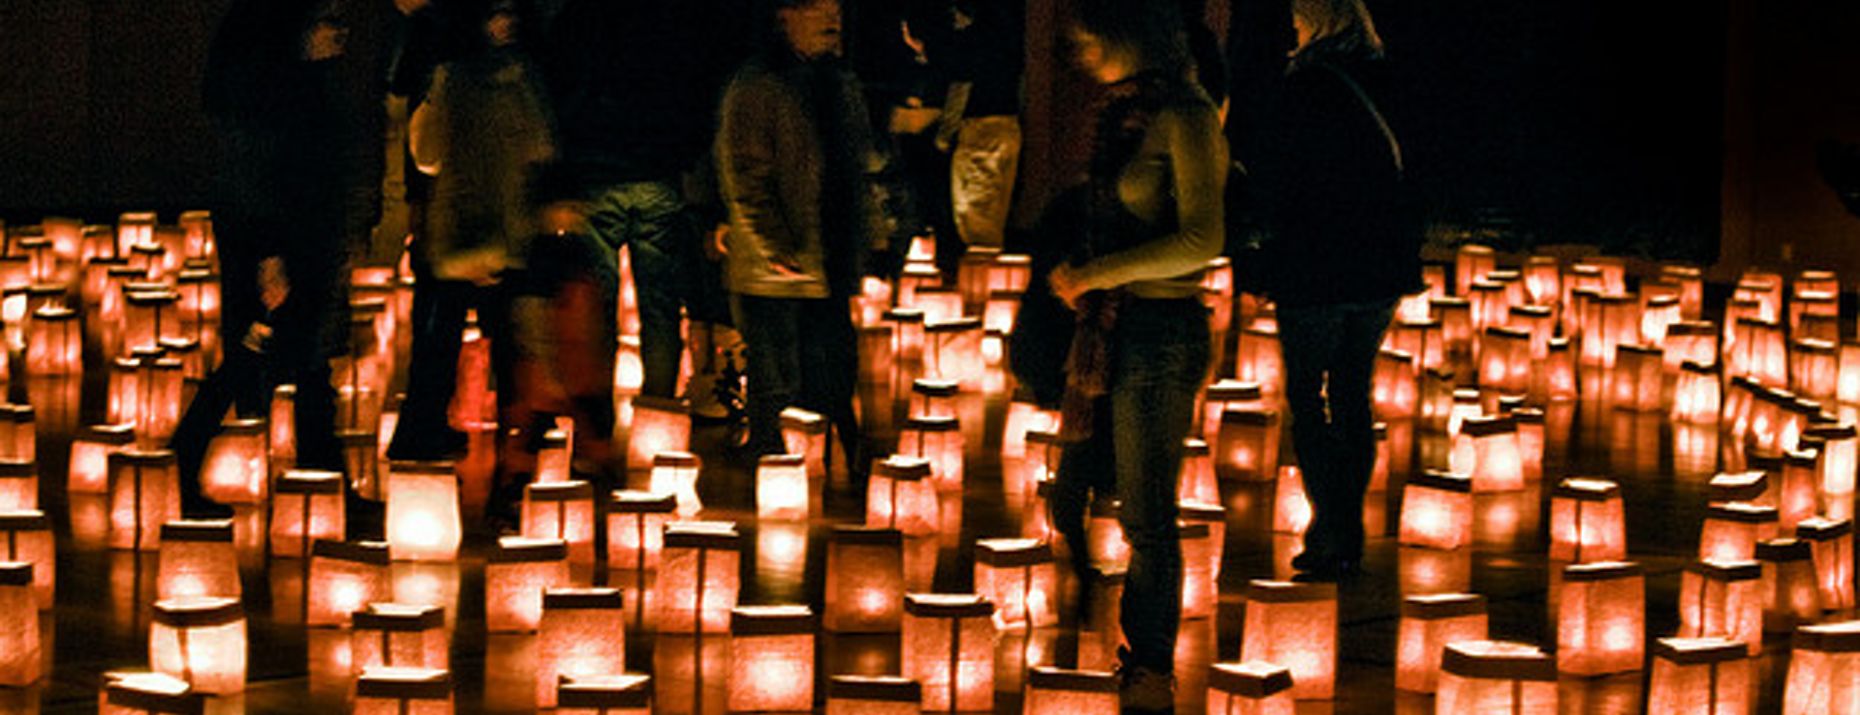 Svetlobni labirint na Visti